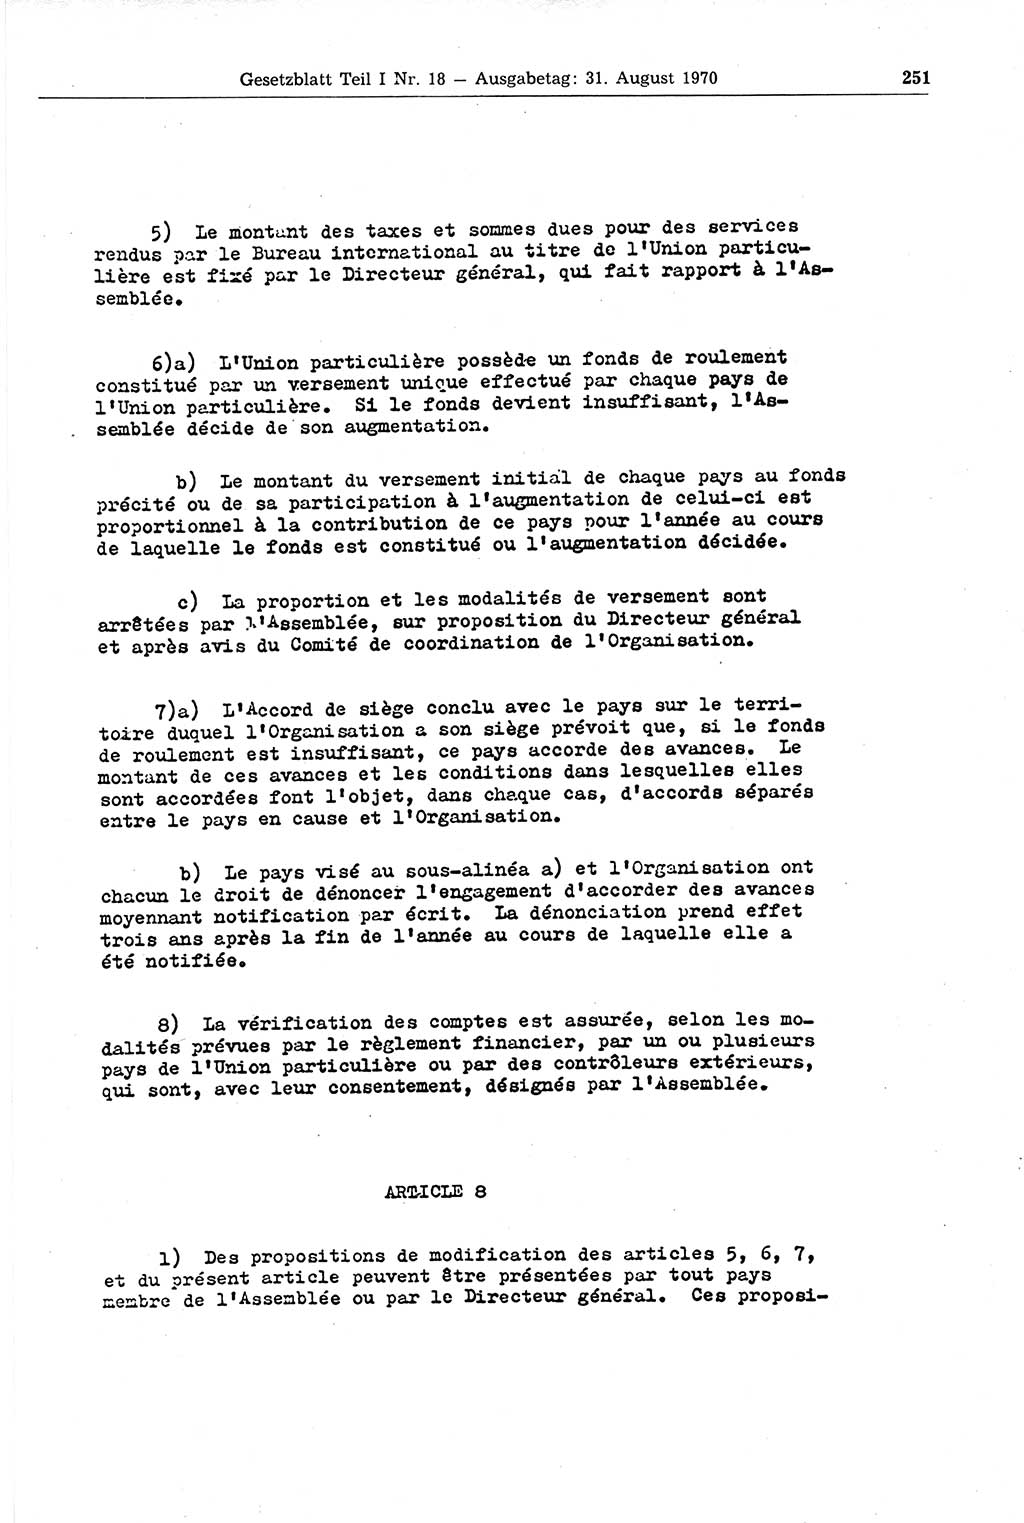 Gesetzblatt (GBl.) der Deutschen Demokratischen Republik (DDR) Teil Ⅰ 1970, Seite 251 (GBl. DDR Ⅰ 1970, S. 251)